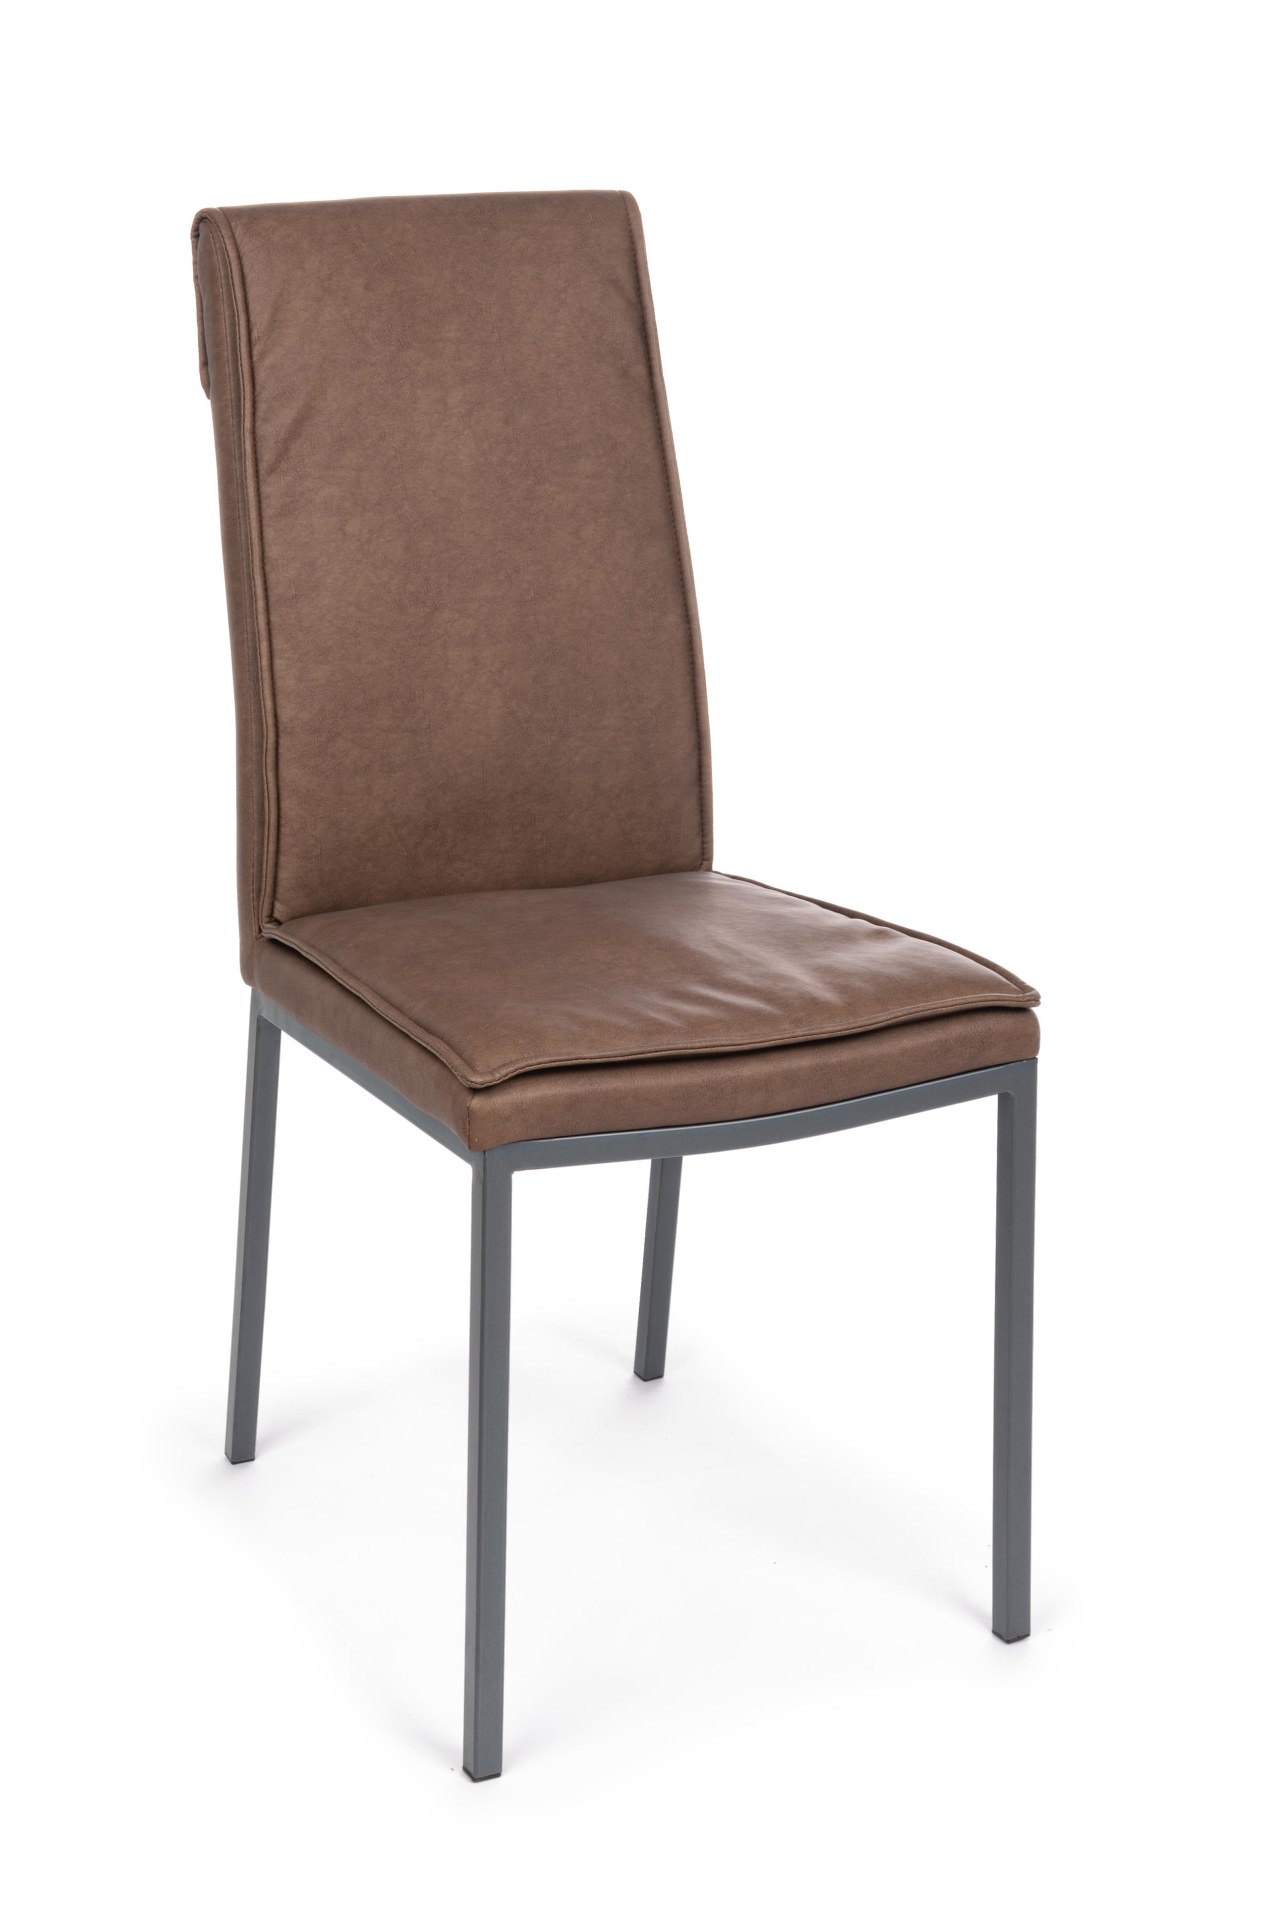 Der Esszimmerstuhl Sofie überzeugt mit seinem klassischen Design. Gefertigt wurde der Stuhl aus Kunstleder, welches einen Cognac Farbton hat. Das Gestell ist aus Metall und ist Schwarz. Die Sitzhöhe beträgt 49 cm.